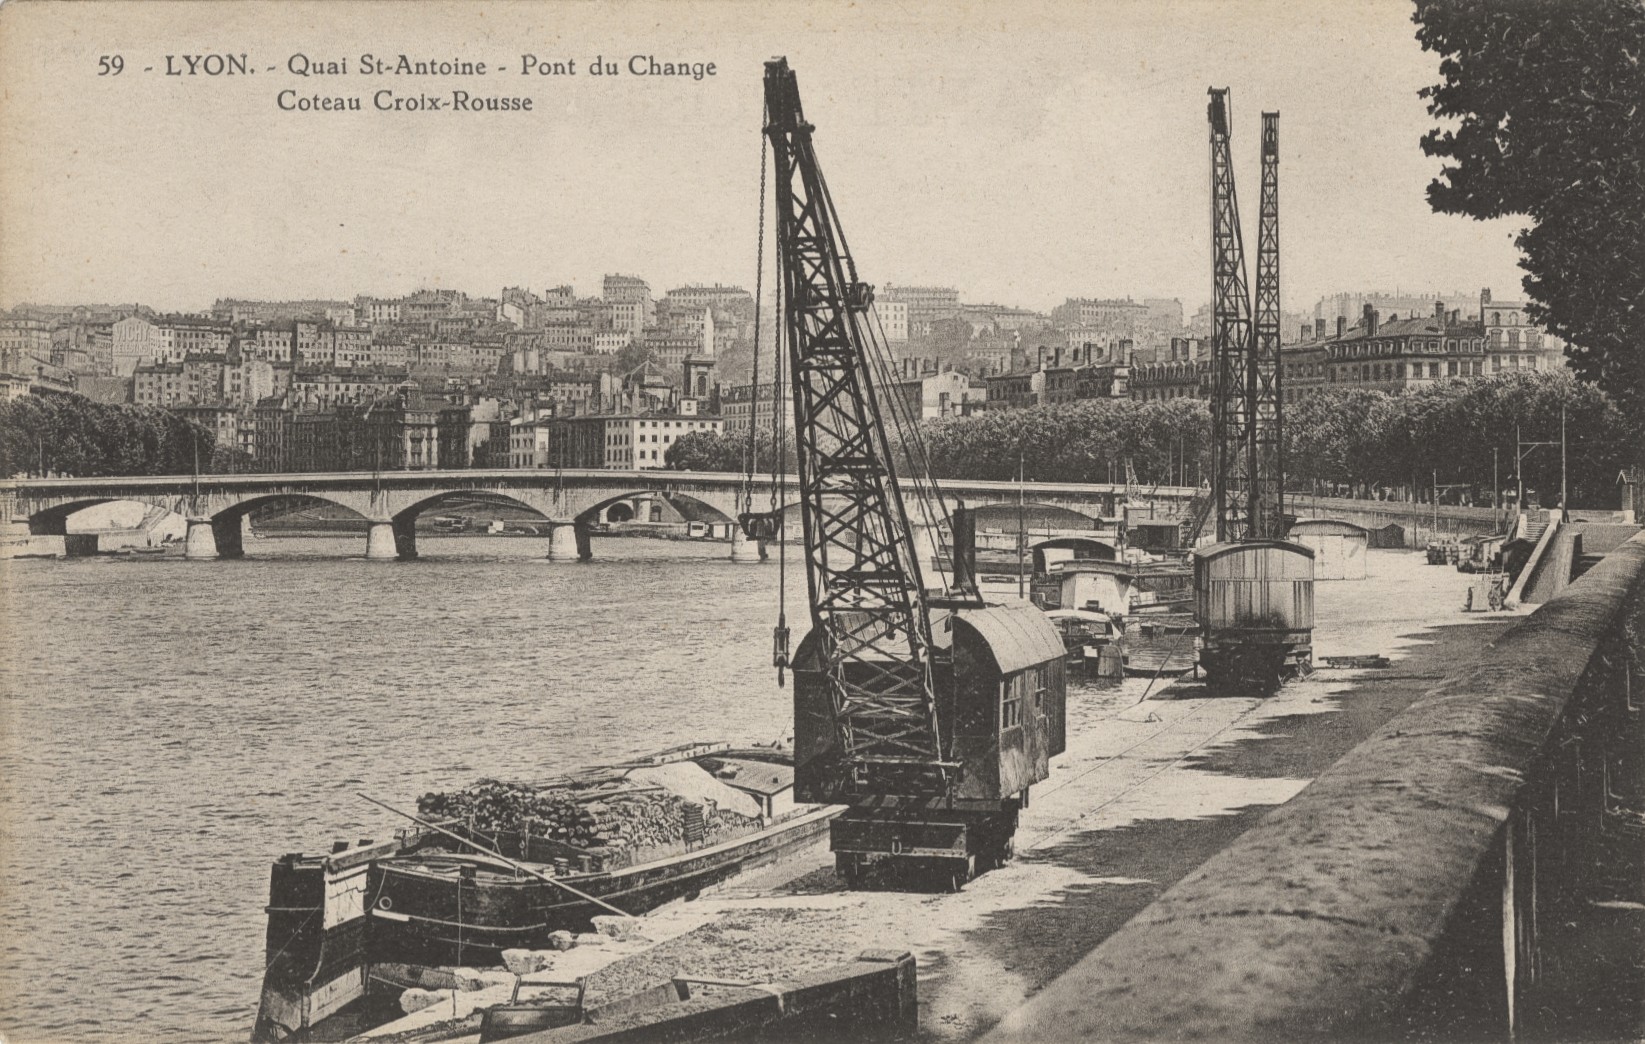 yon-Quai Saint-Antoine, pont du Change, coteau Croix-Rousse : carte postale NB (vers 1910, cote : 4FI/3292)